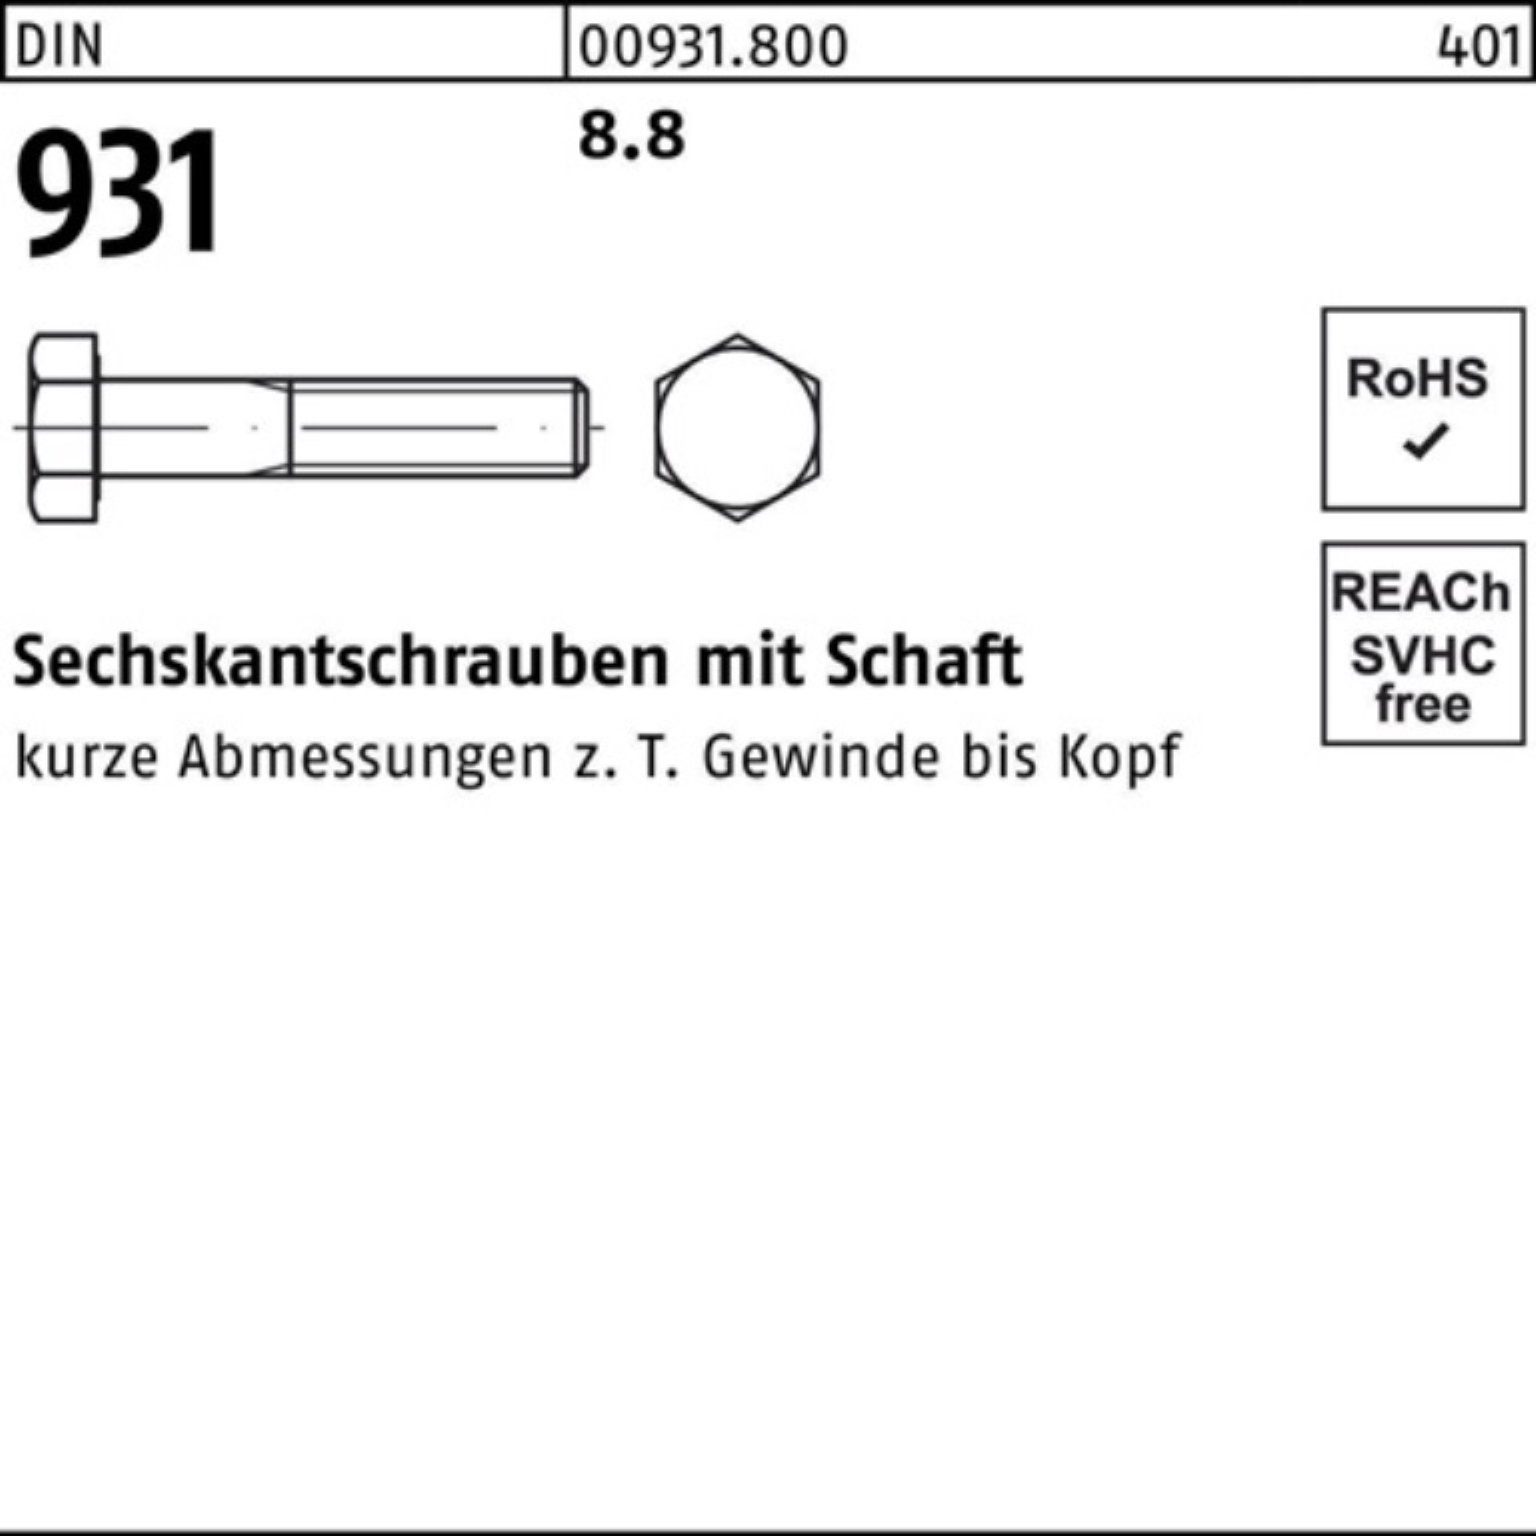 270 Sechskantschraube 8.8 1 DIN Schaft Stück Sechskantschraube Reyher 931 100er DIN Pack M33x